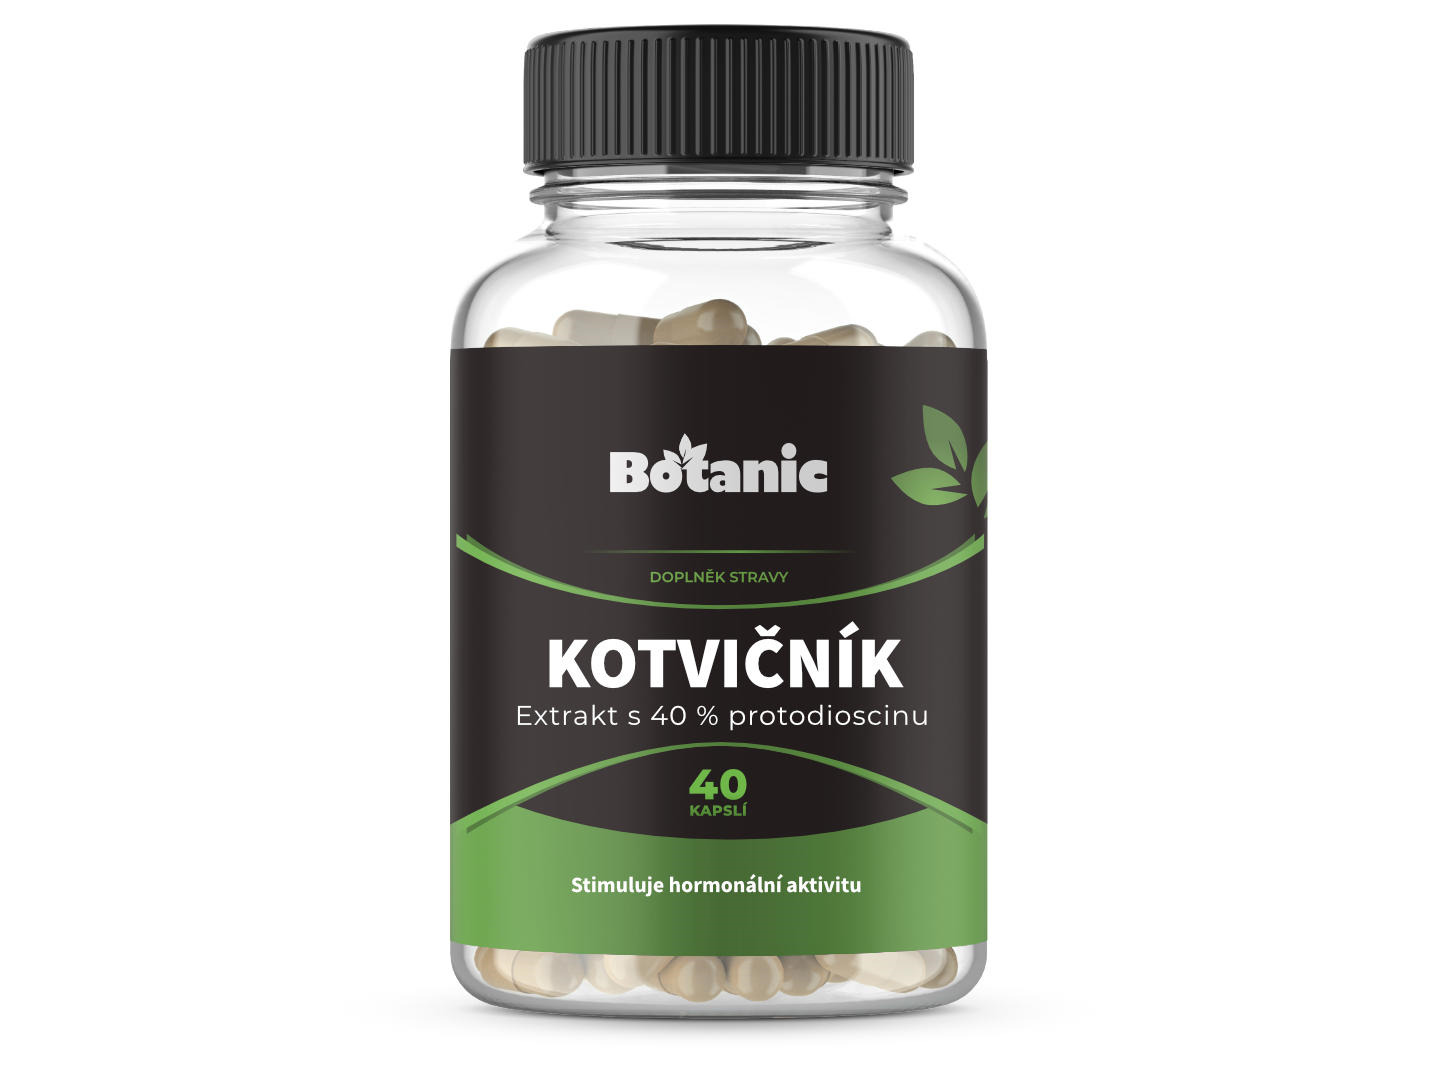 Botanic Kotvičník (Tribulus) - Extrakt 40 % protodioscinů v kapslích 40kap.